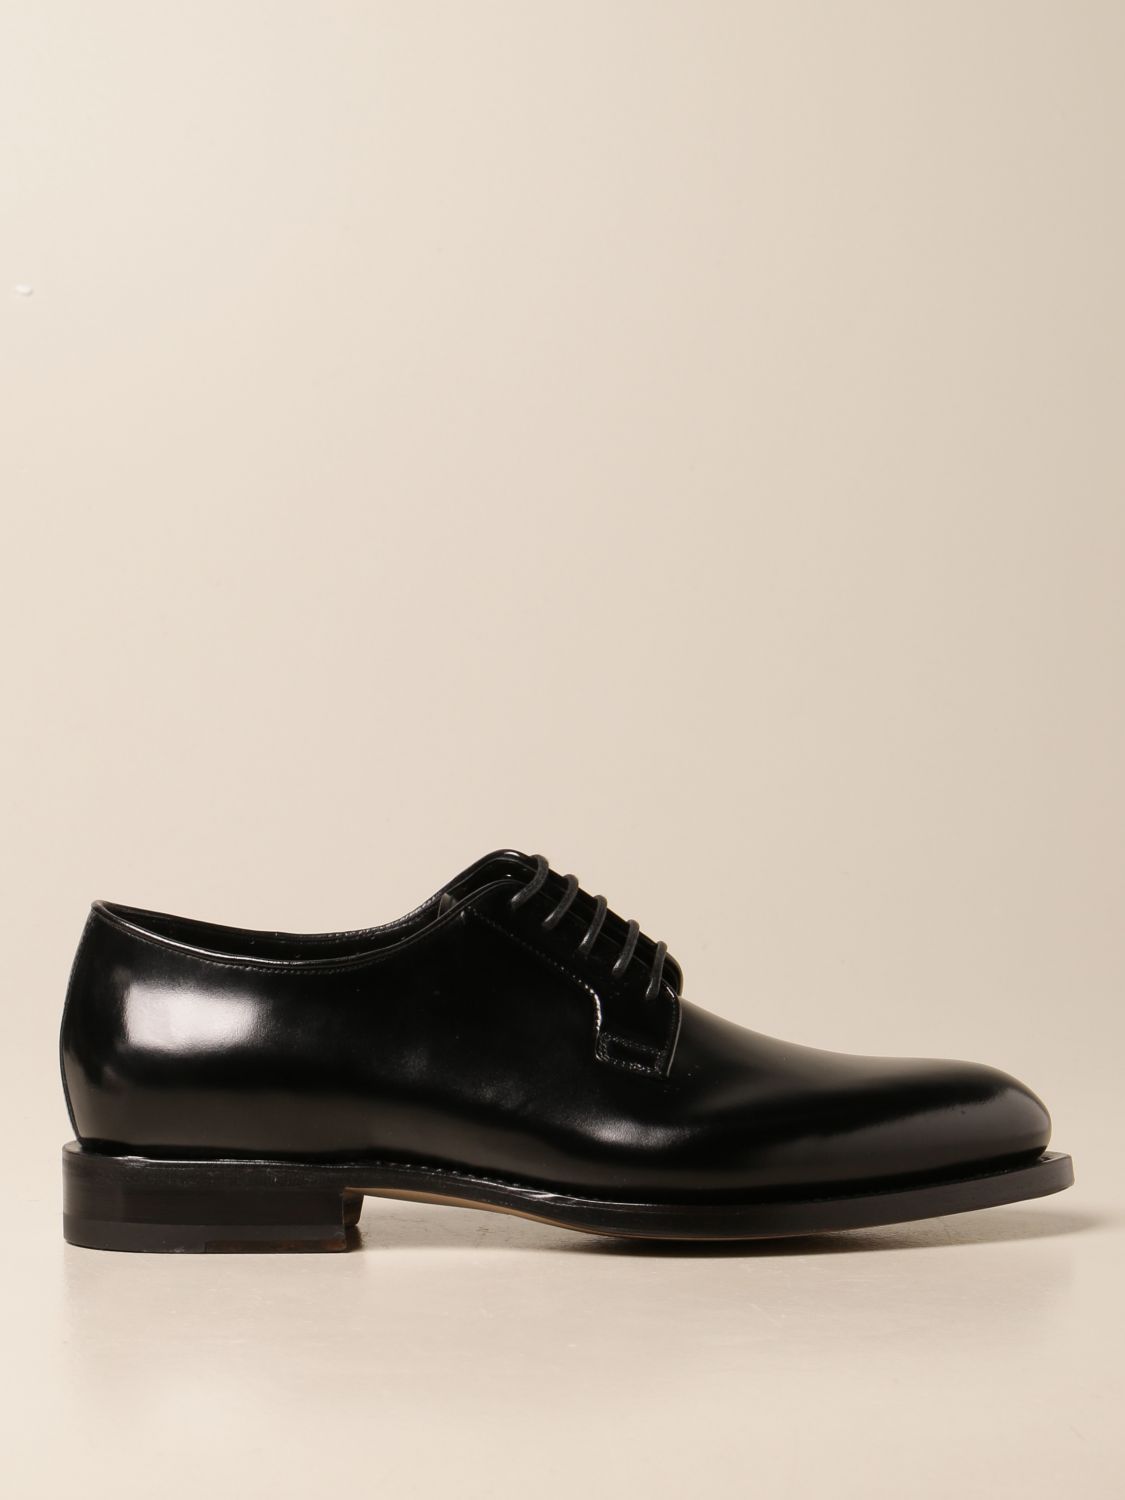 Ontwaken Herformuleren laten vallen SANTONI: brogue shoes for man - Black | Santoni brogue shoes  MCCO13974PC4HHML online on GIGLIO.COM